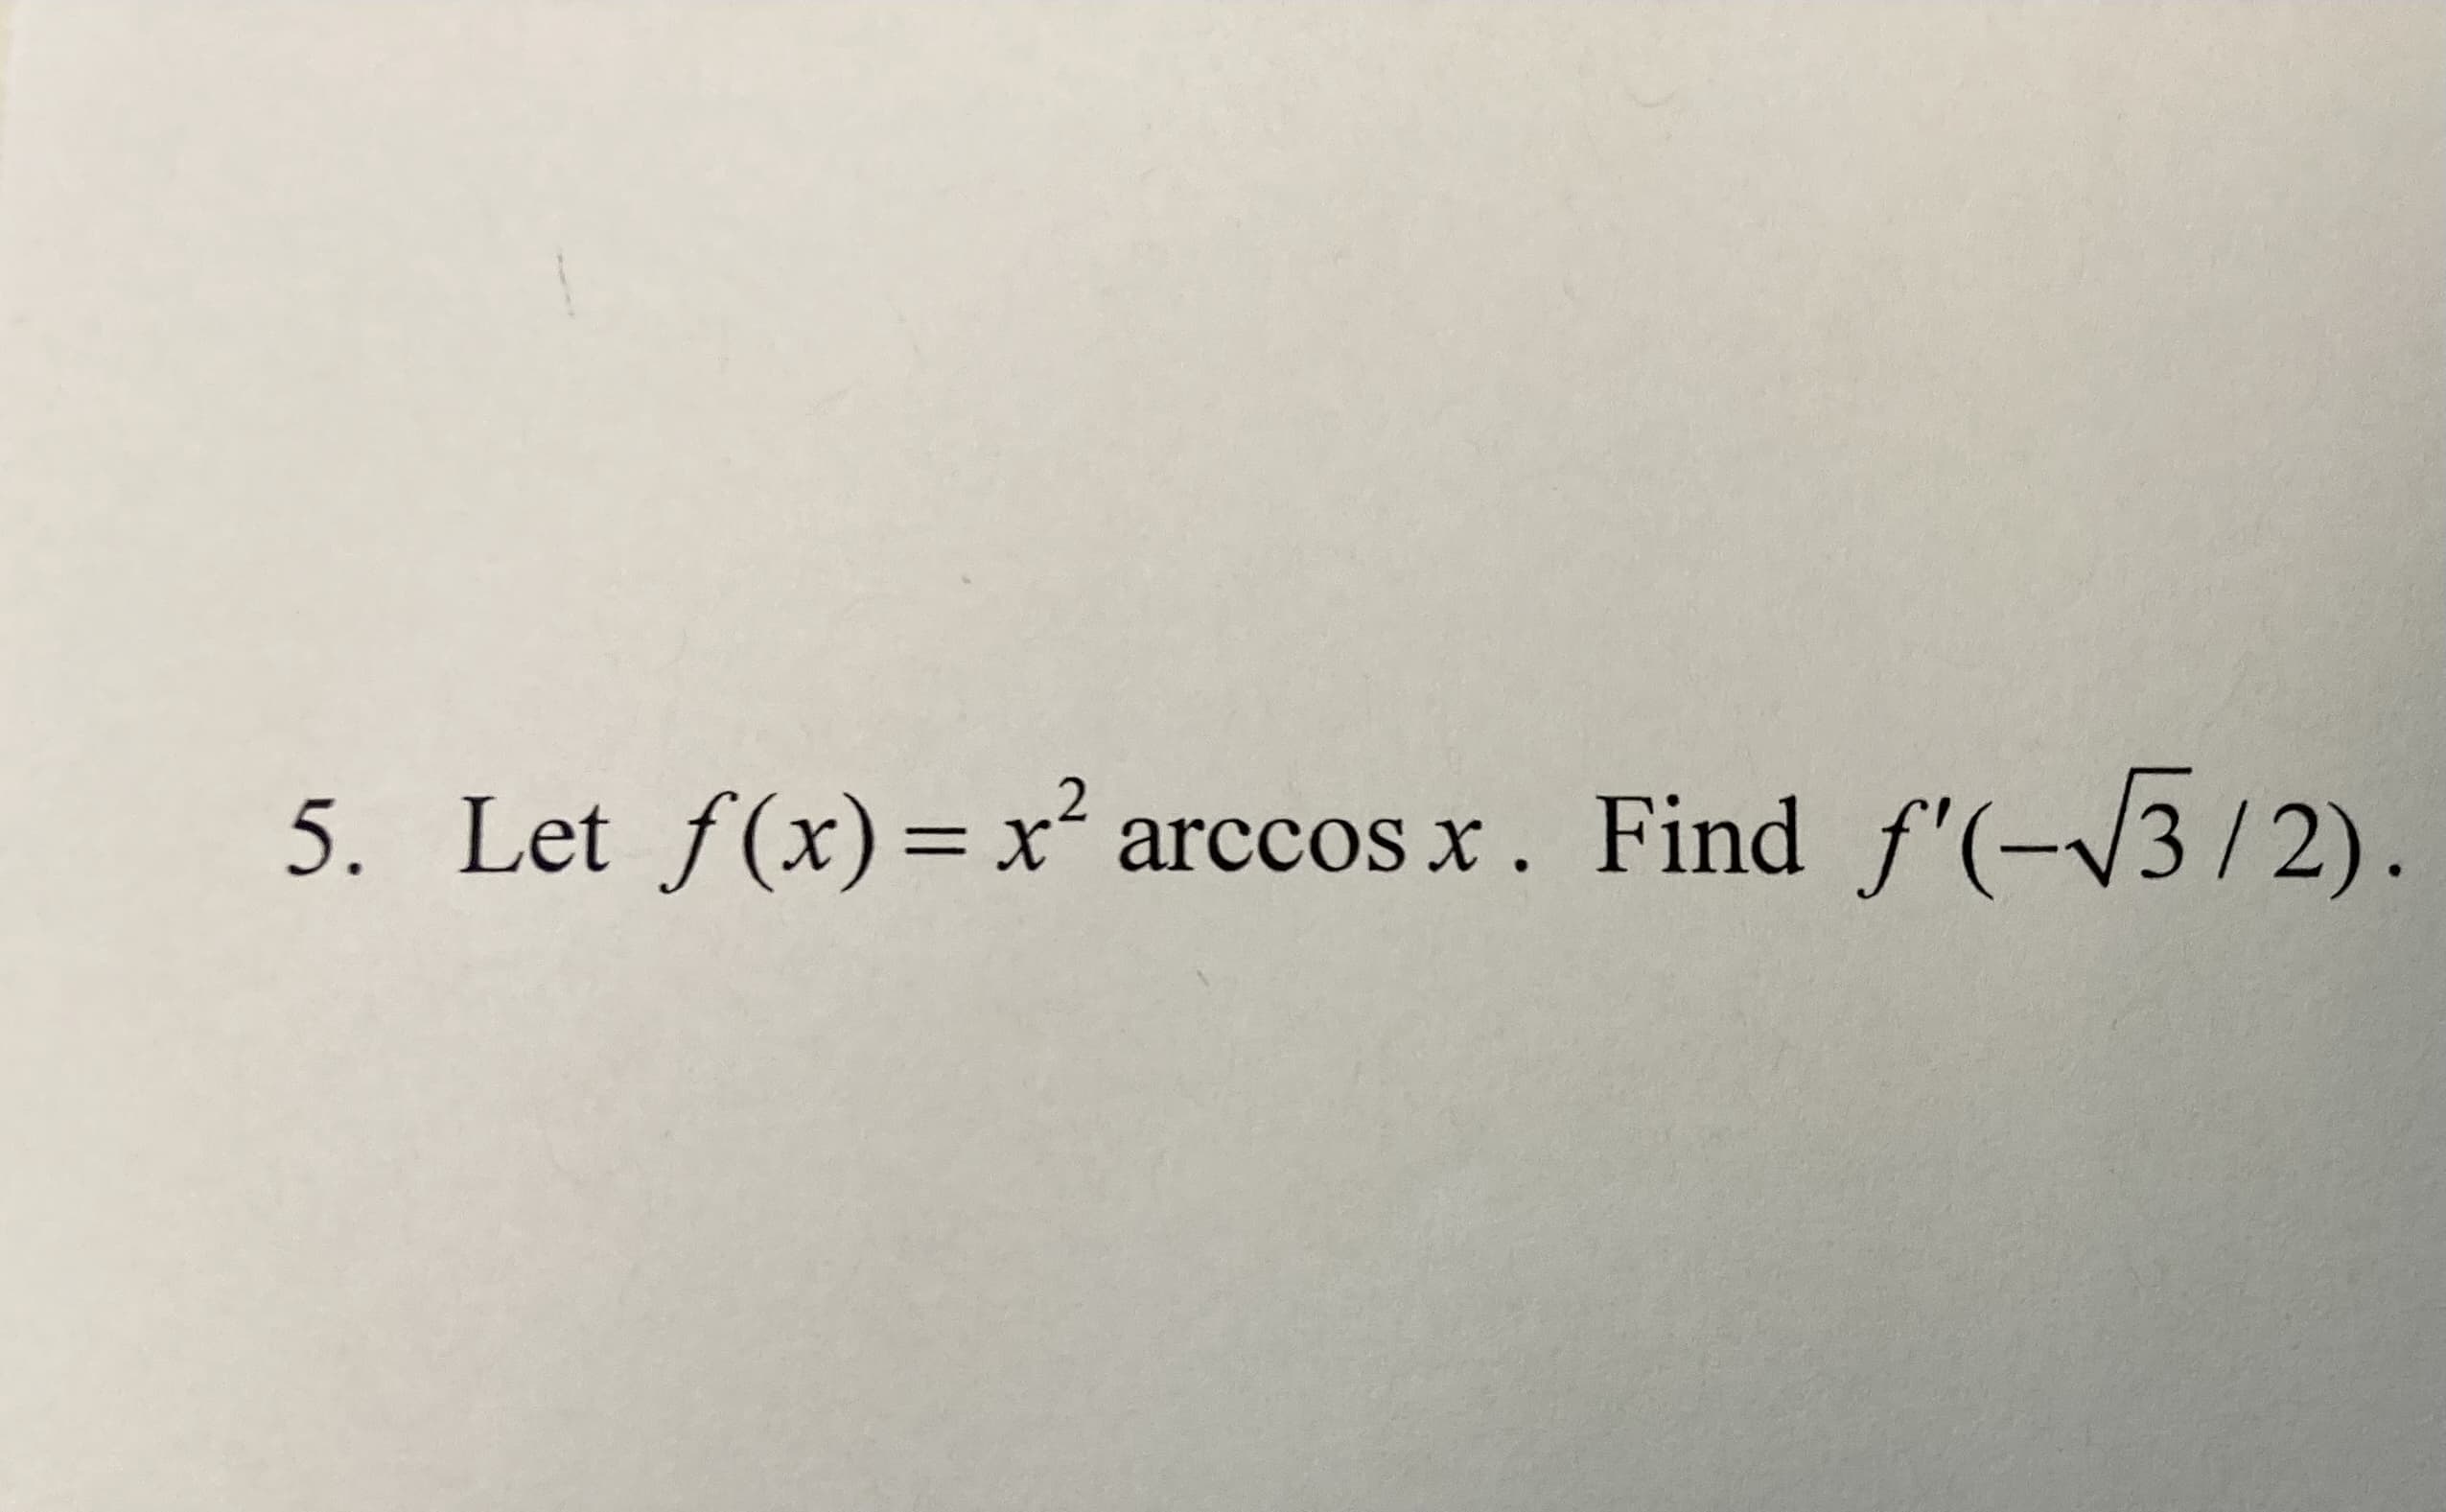 5. Let f(x)= x .
arccos x. Find f'(-/3/2)
||
